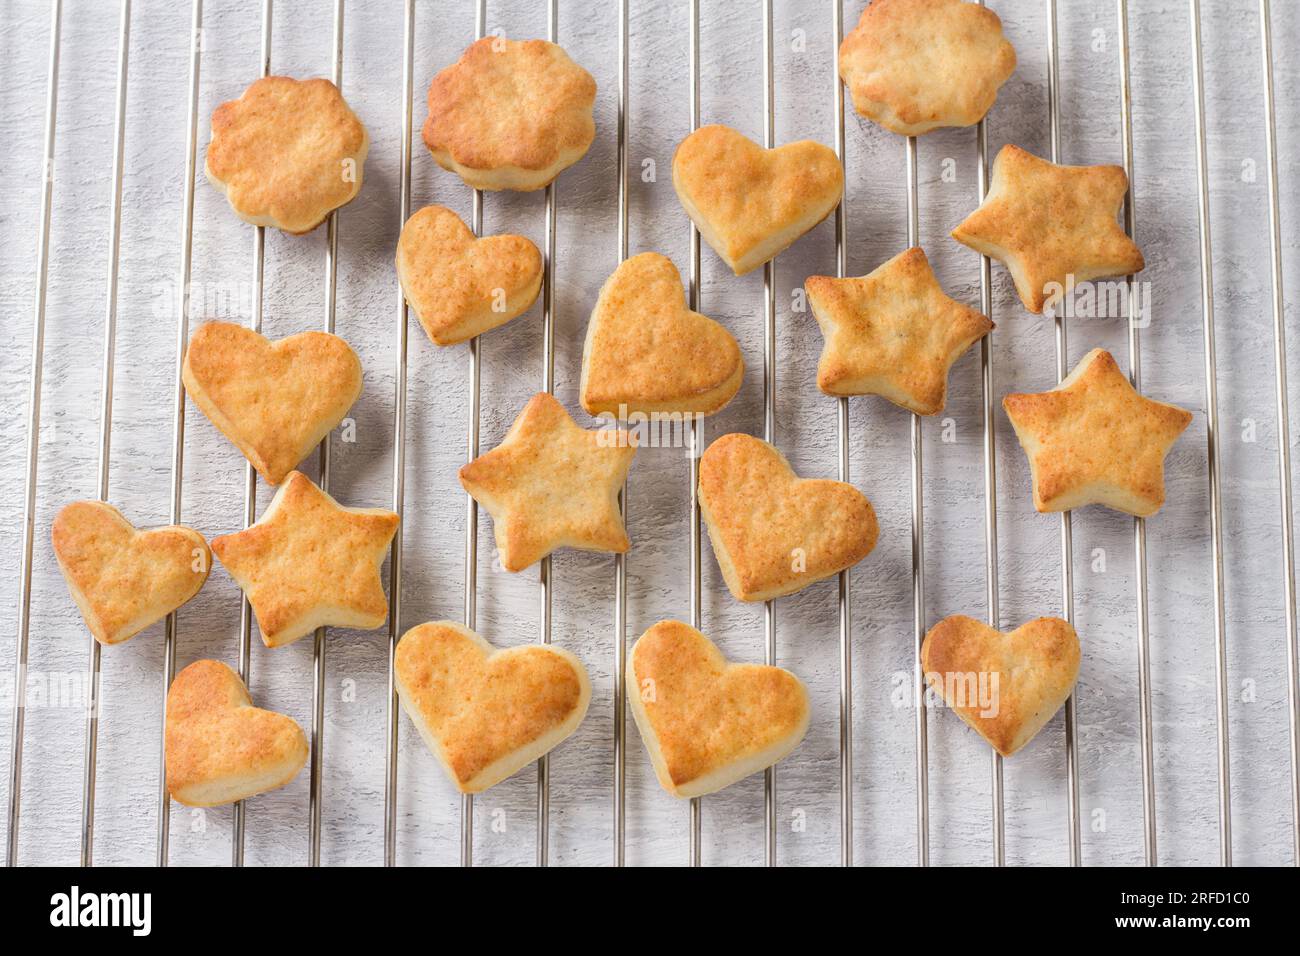 Biscuits au fromage cottage fraîchement cuits en forme d'étoiles et de coeurs sur une grille en acier, vue de dessus. Étape de cuisson de délicieux biscuits faits maison. Banque D'Images